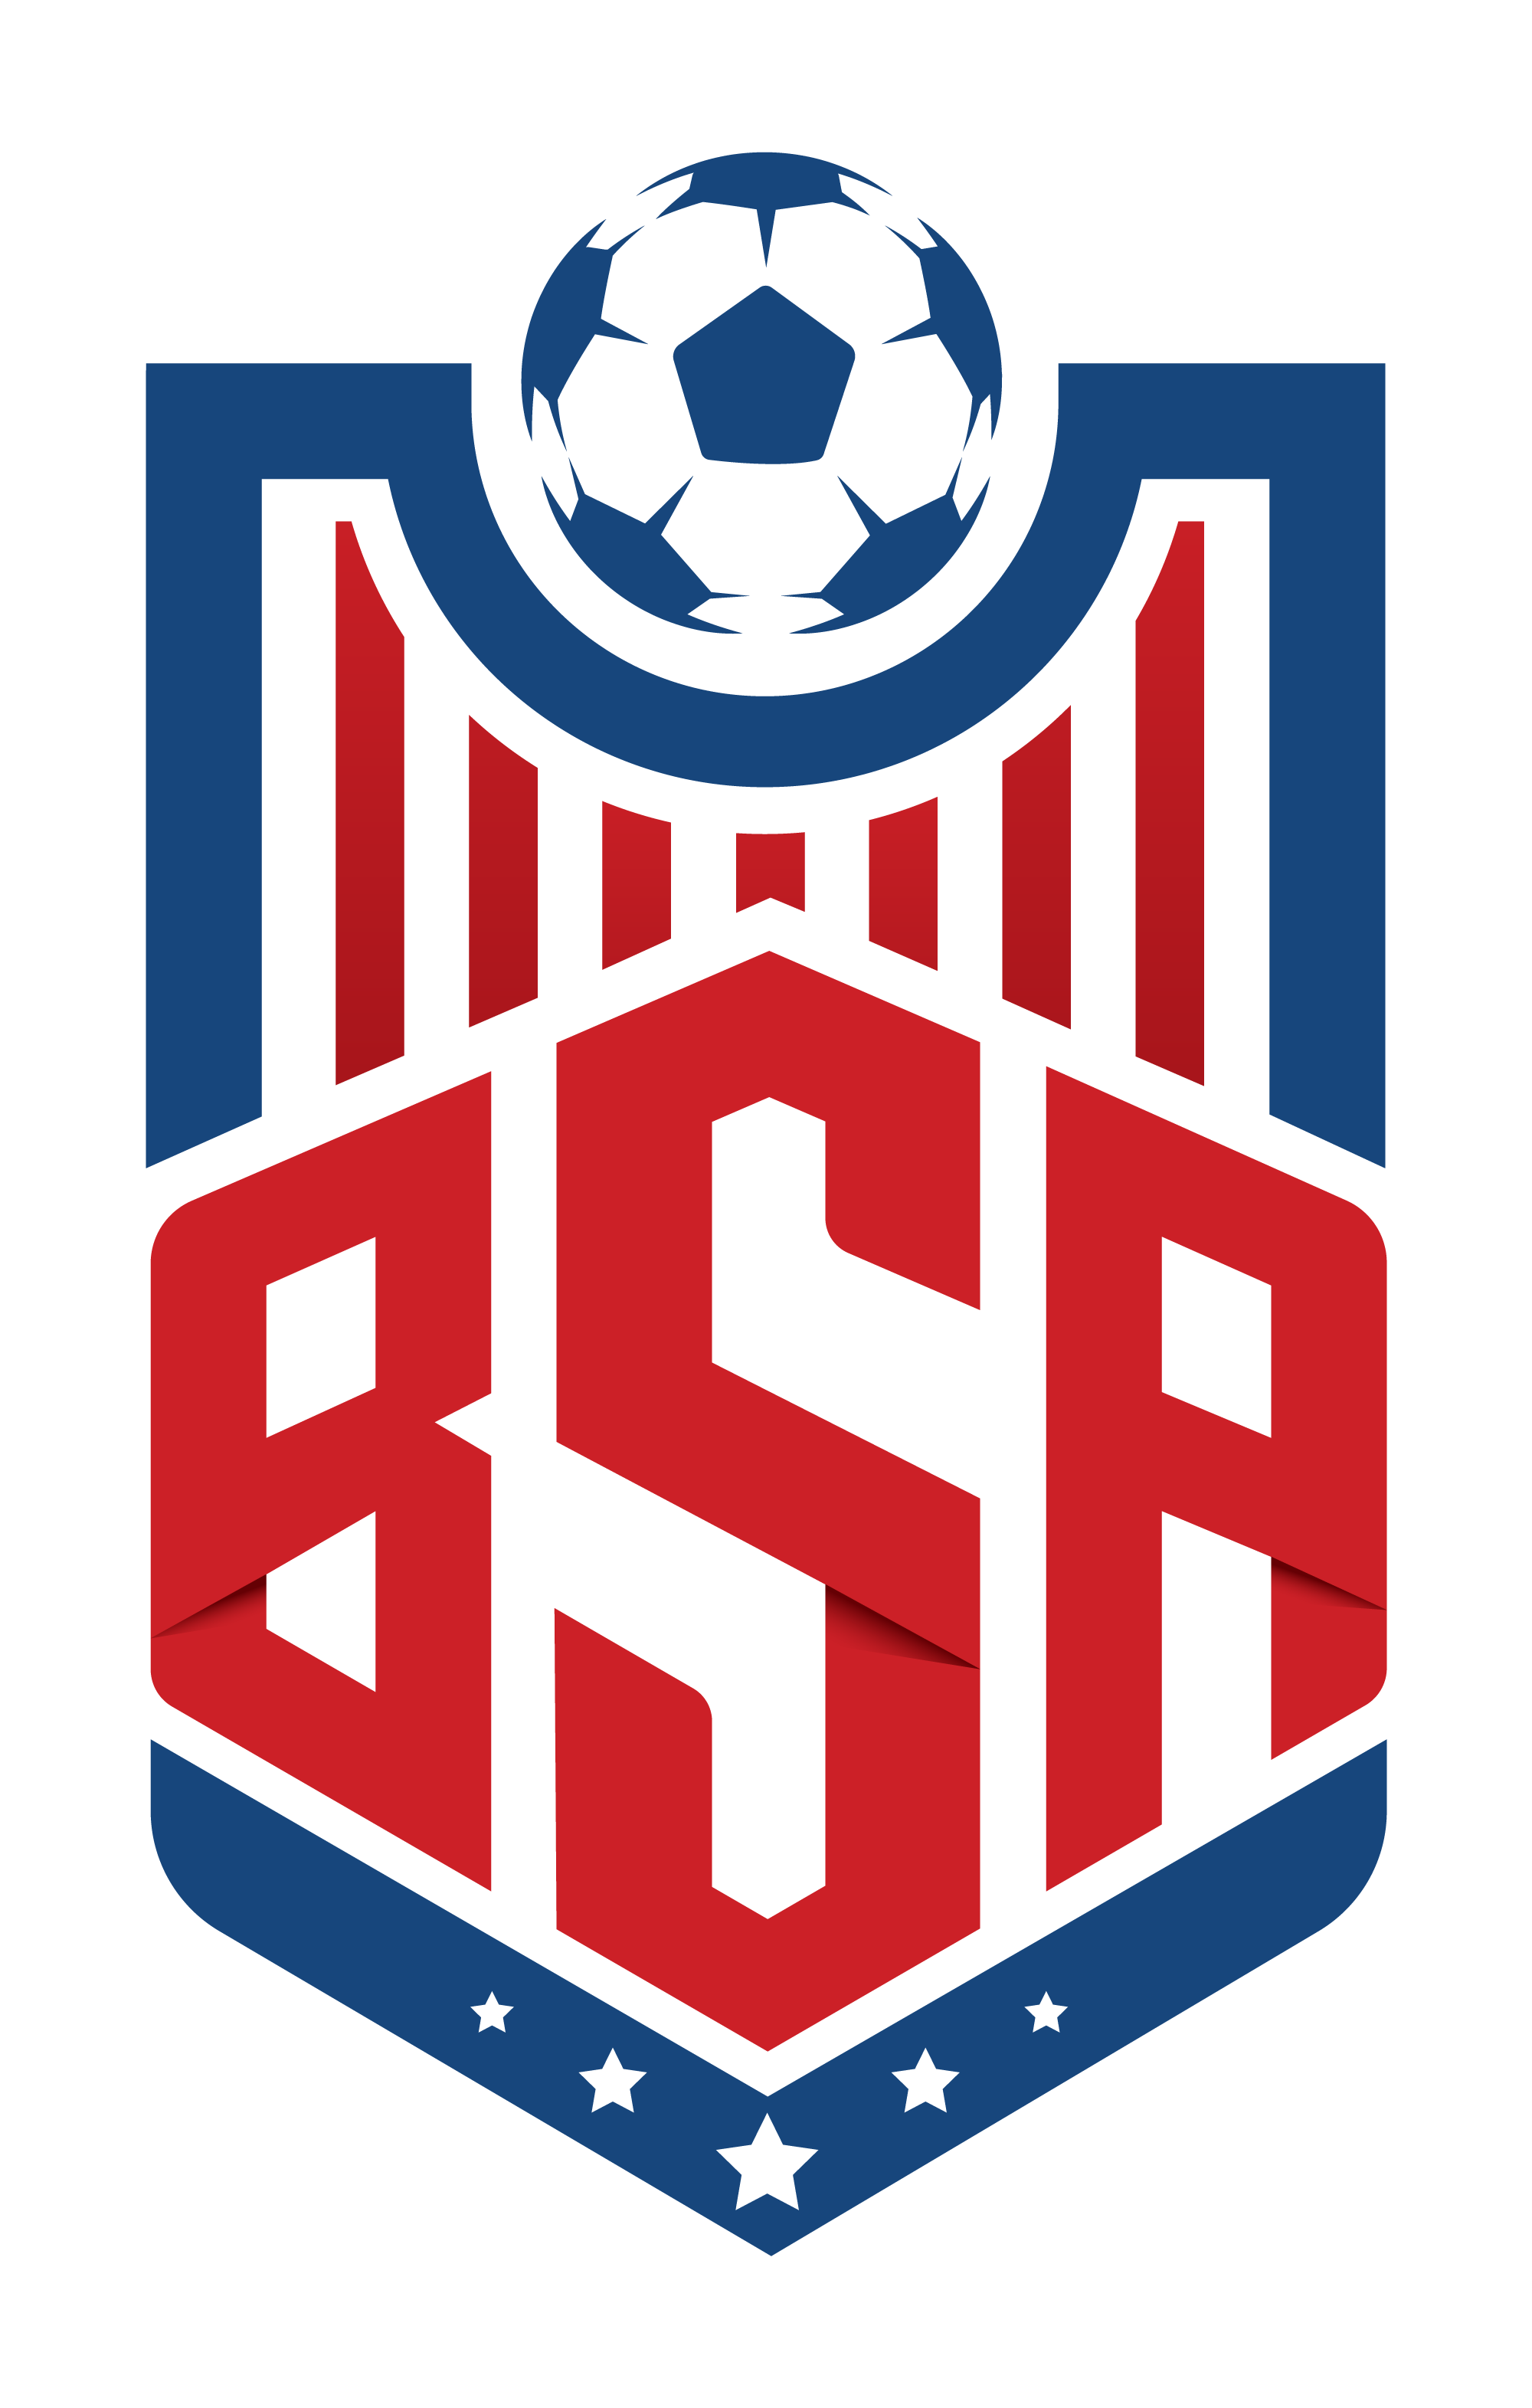 BSA New Website and Logo!